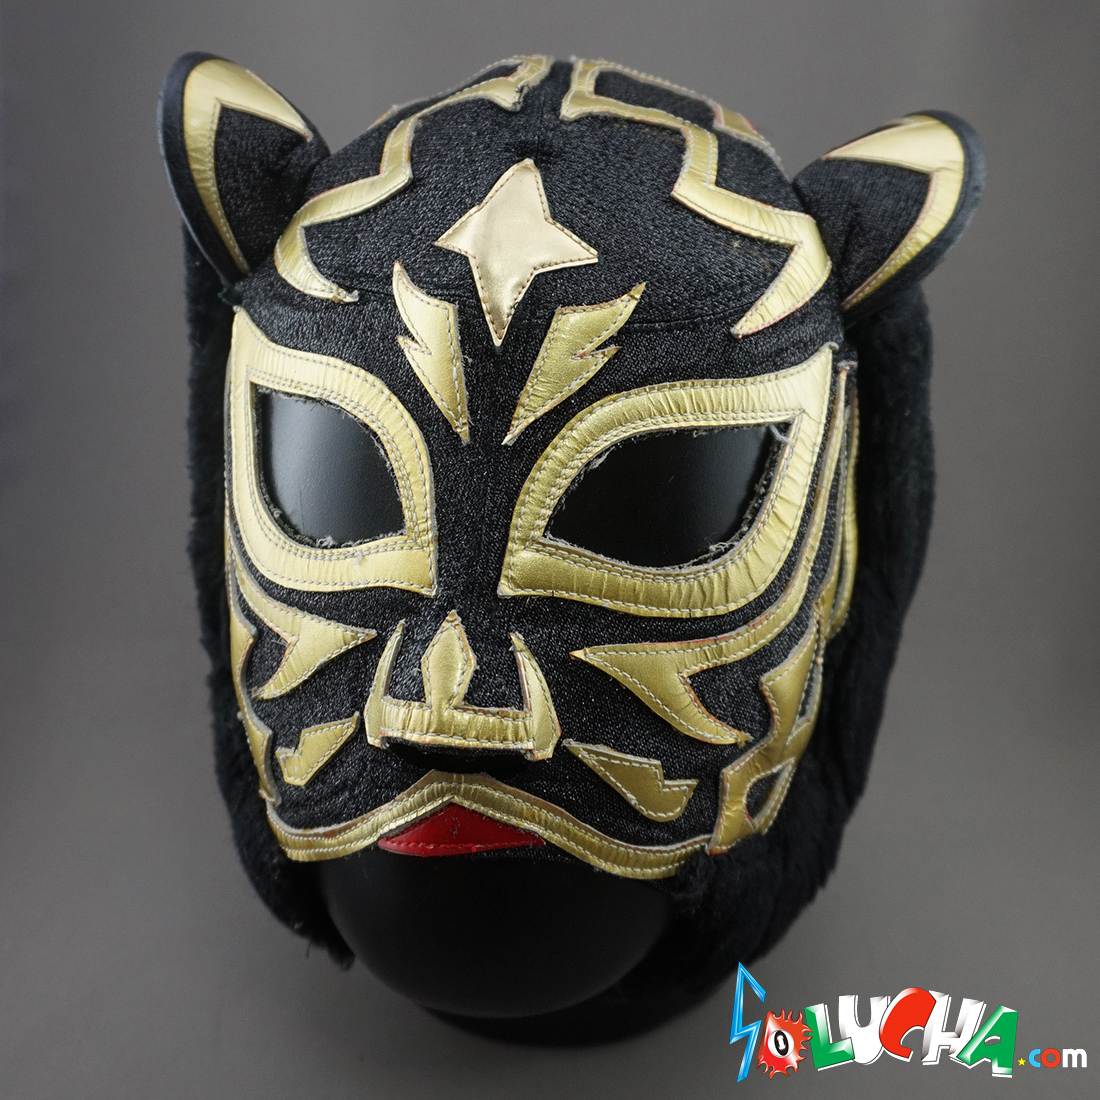 初代タイガーマスク&初代ブラック・タイガーマスク 【実使用マスク】